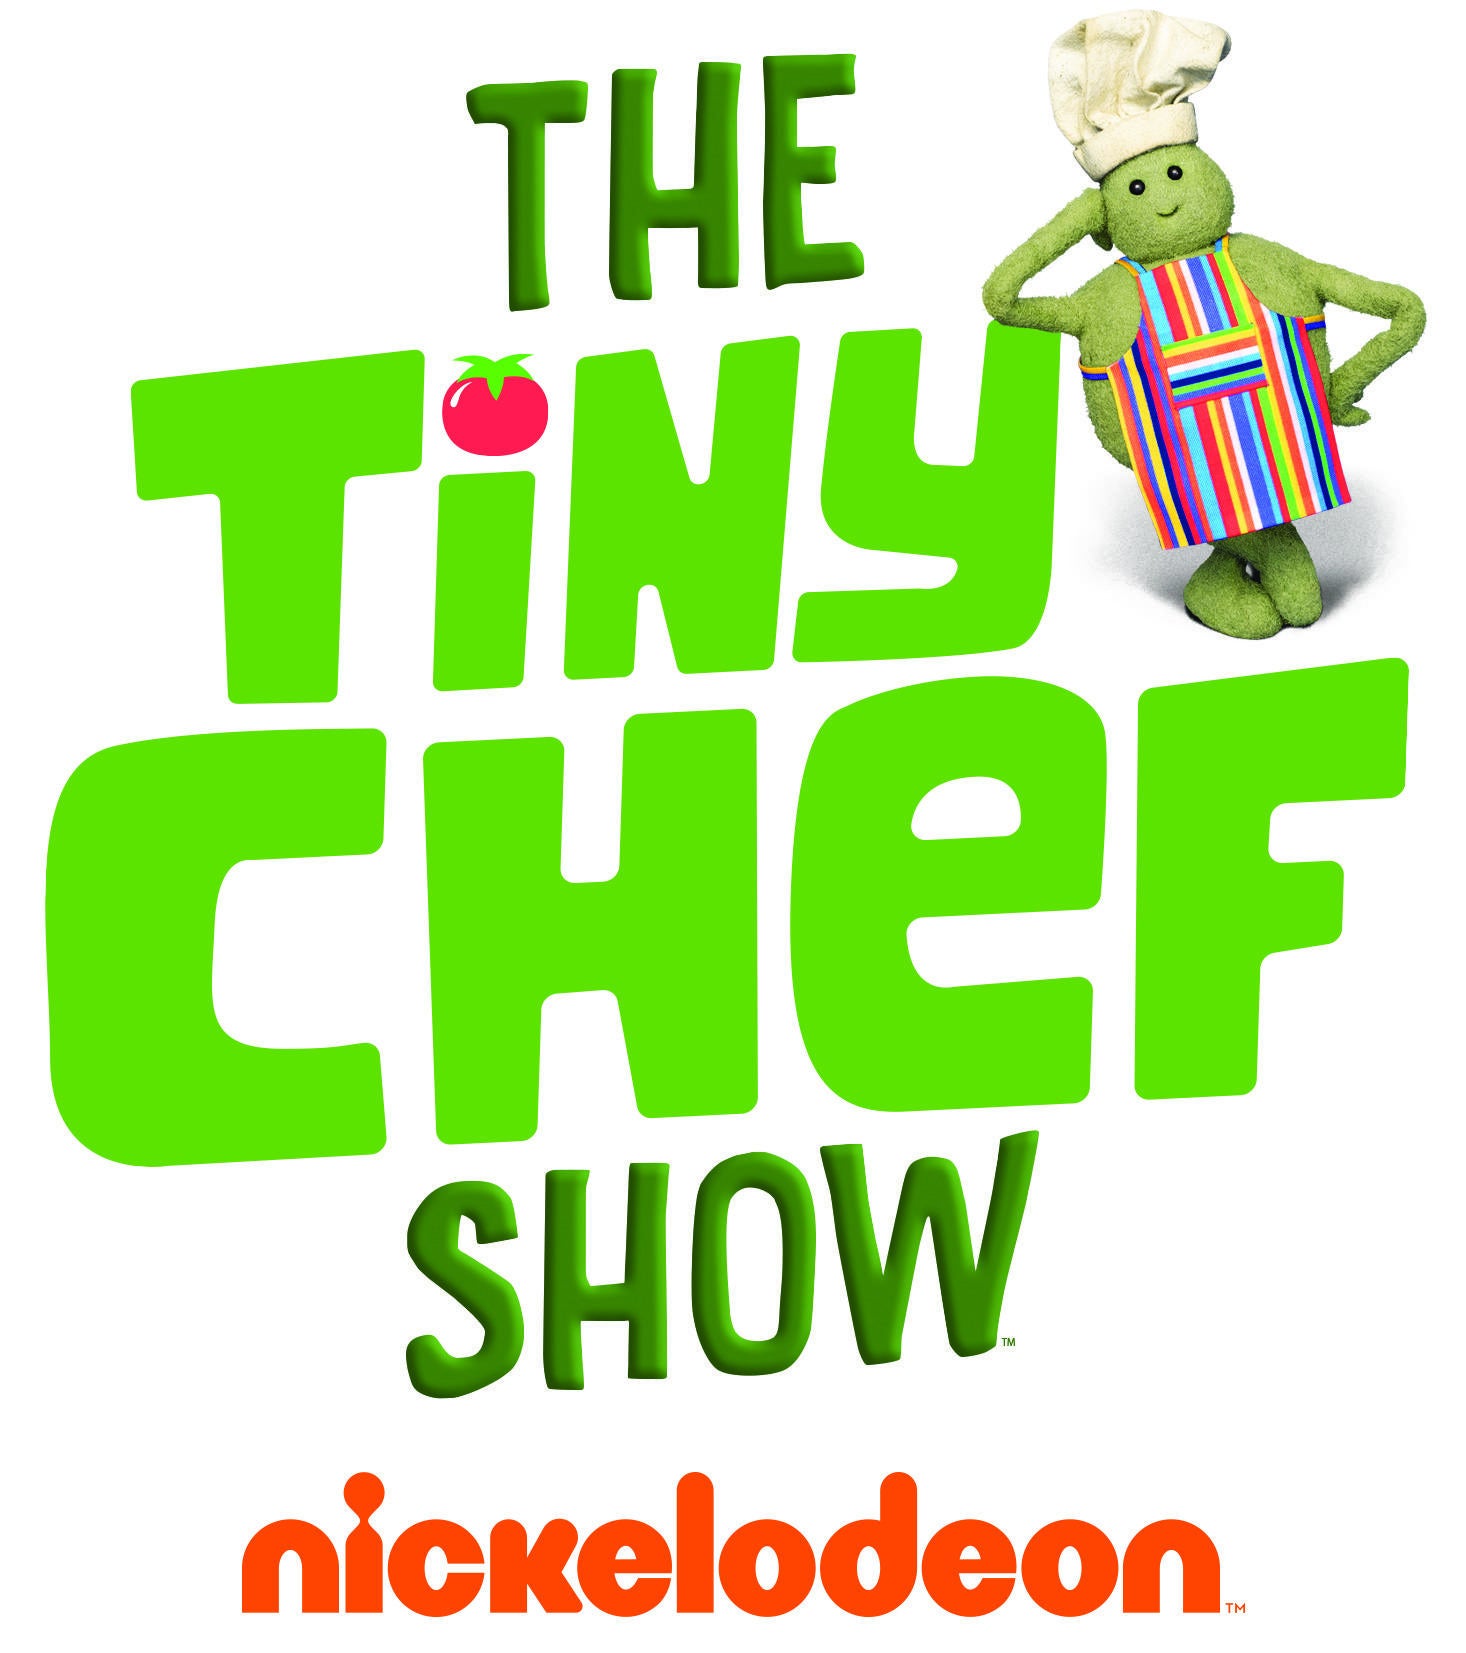 tiny-chef-logo0.jpg